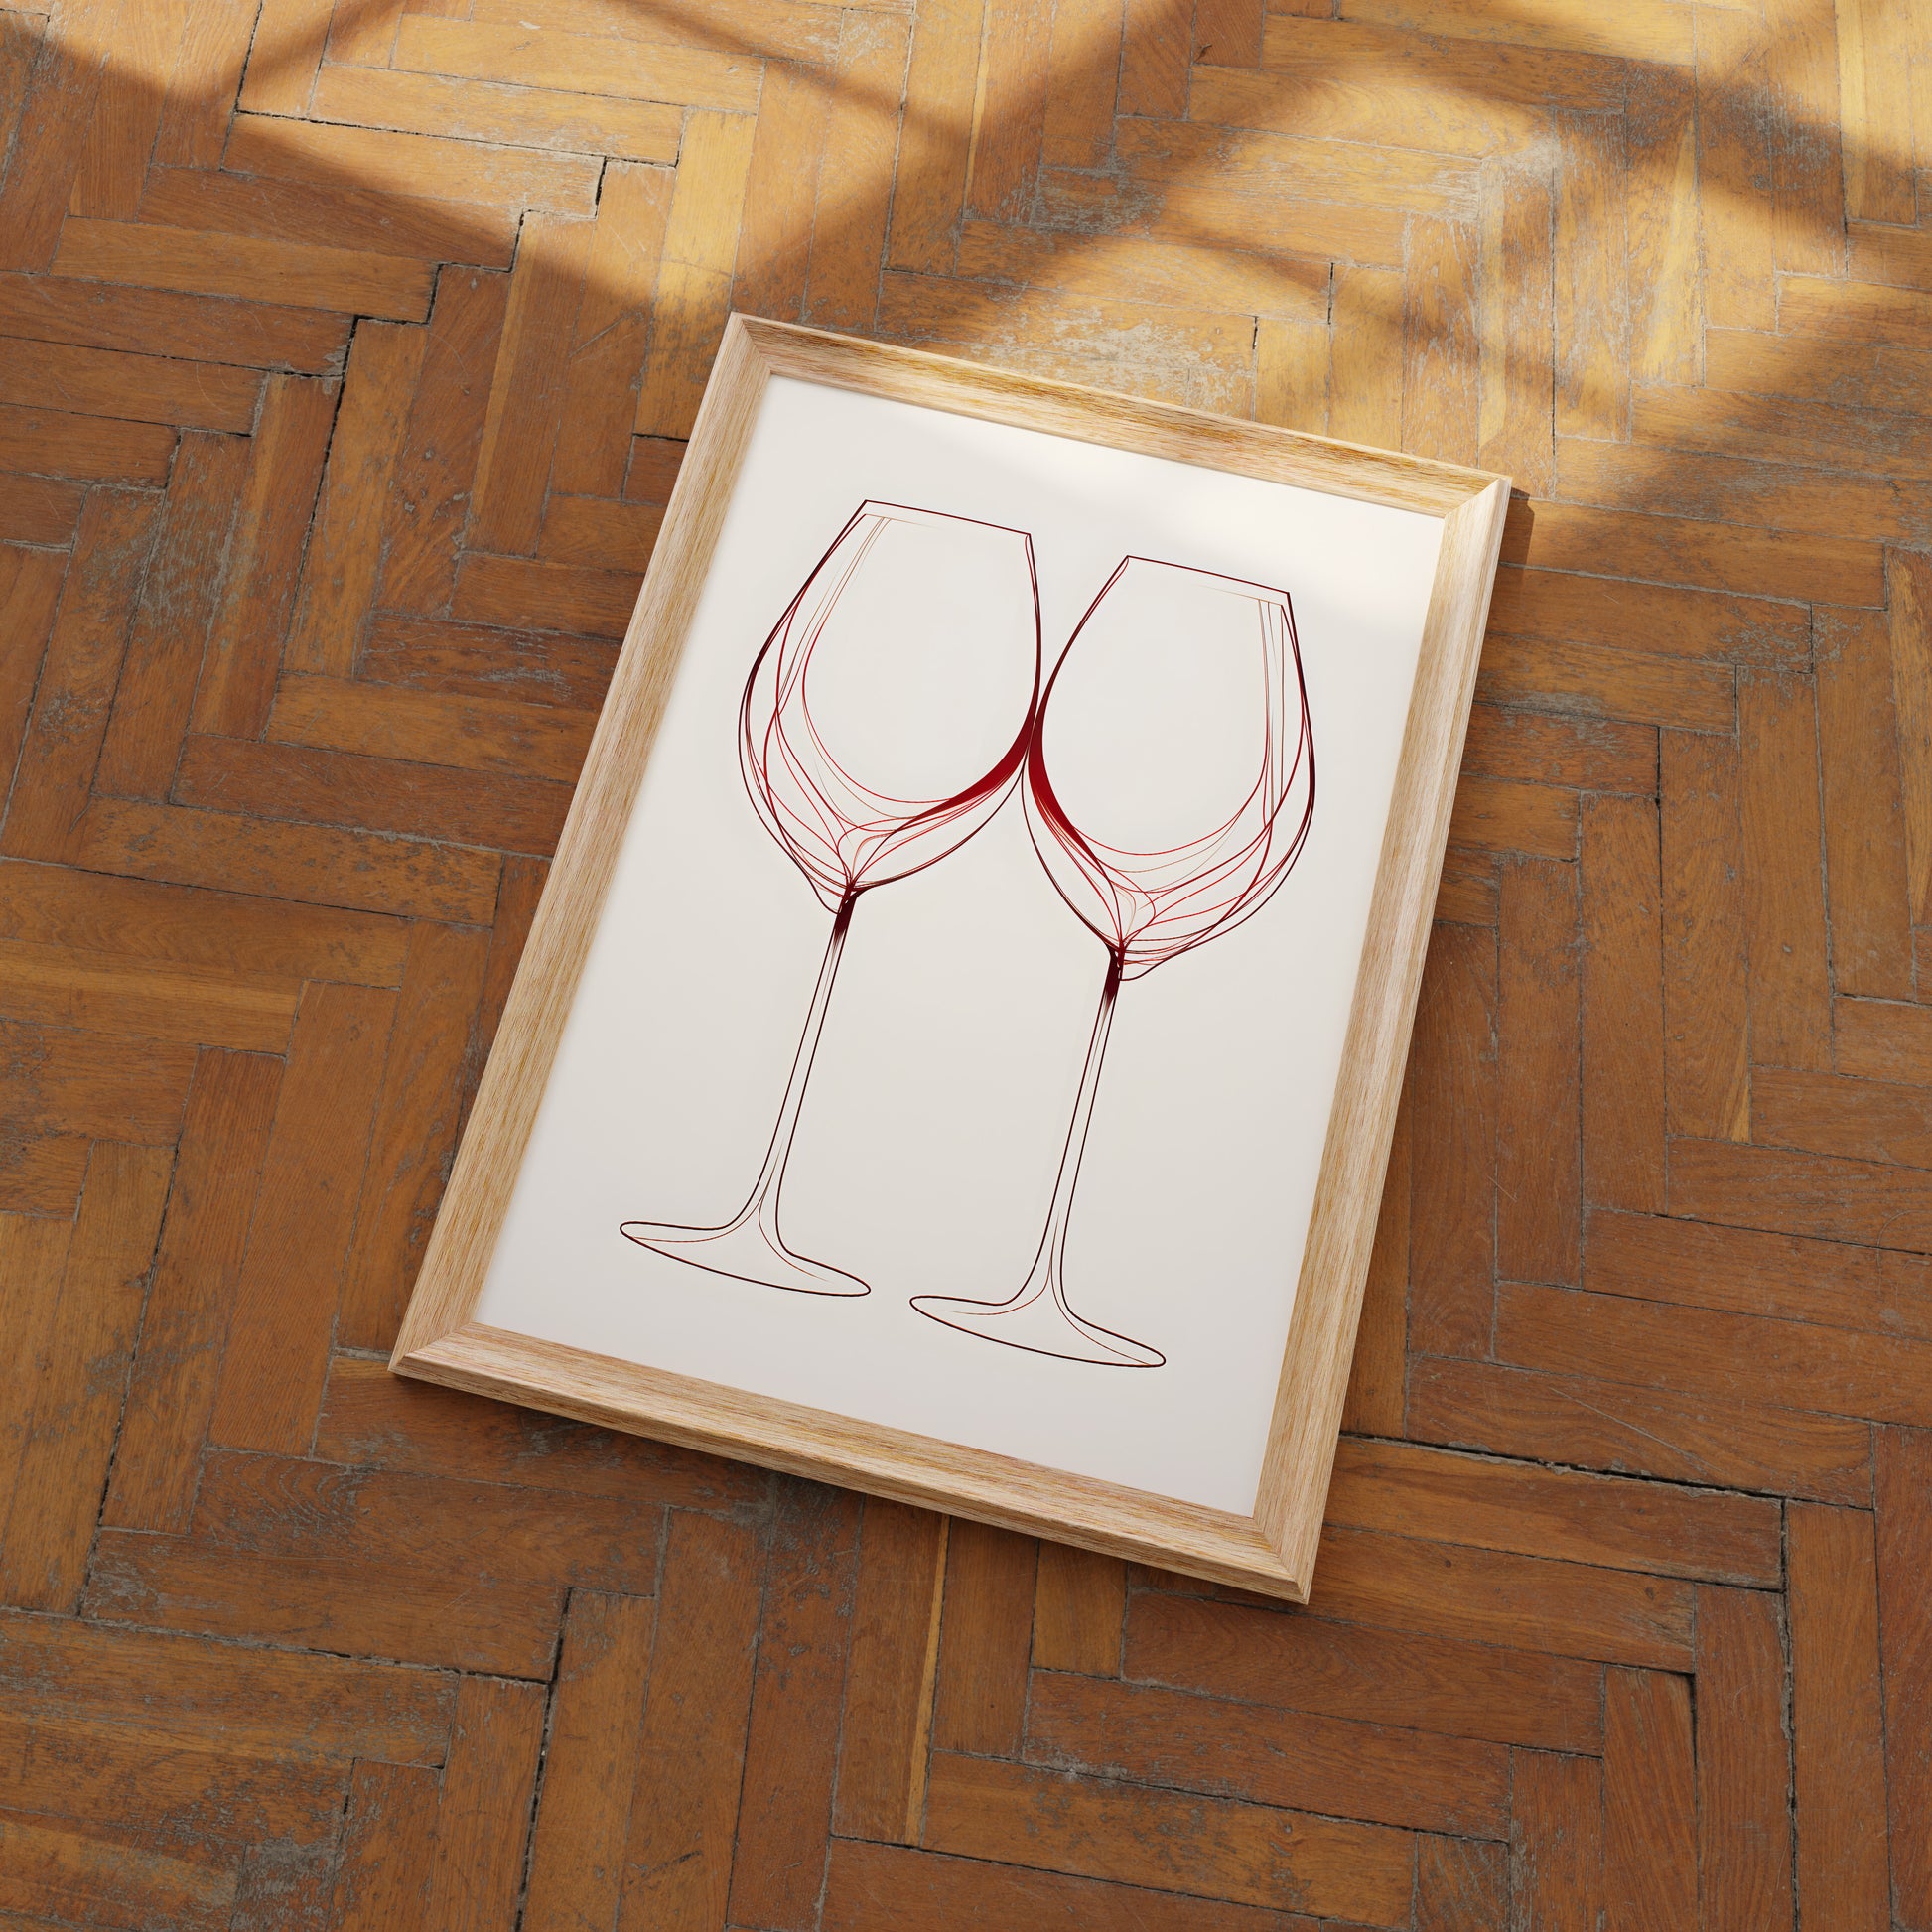 Two wine glasses artwork in a frame on a herringbone wood floor.